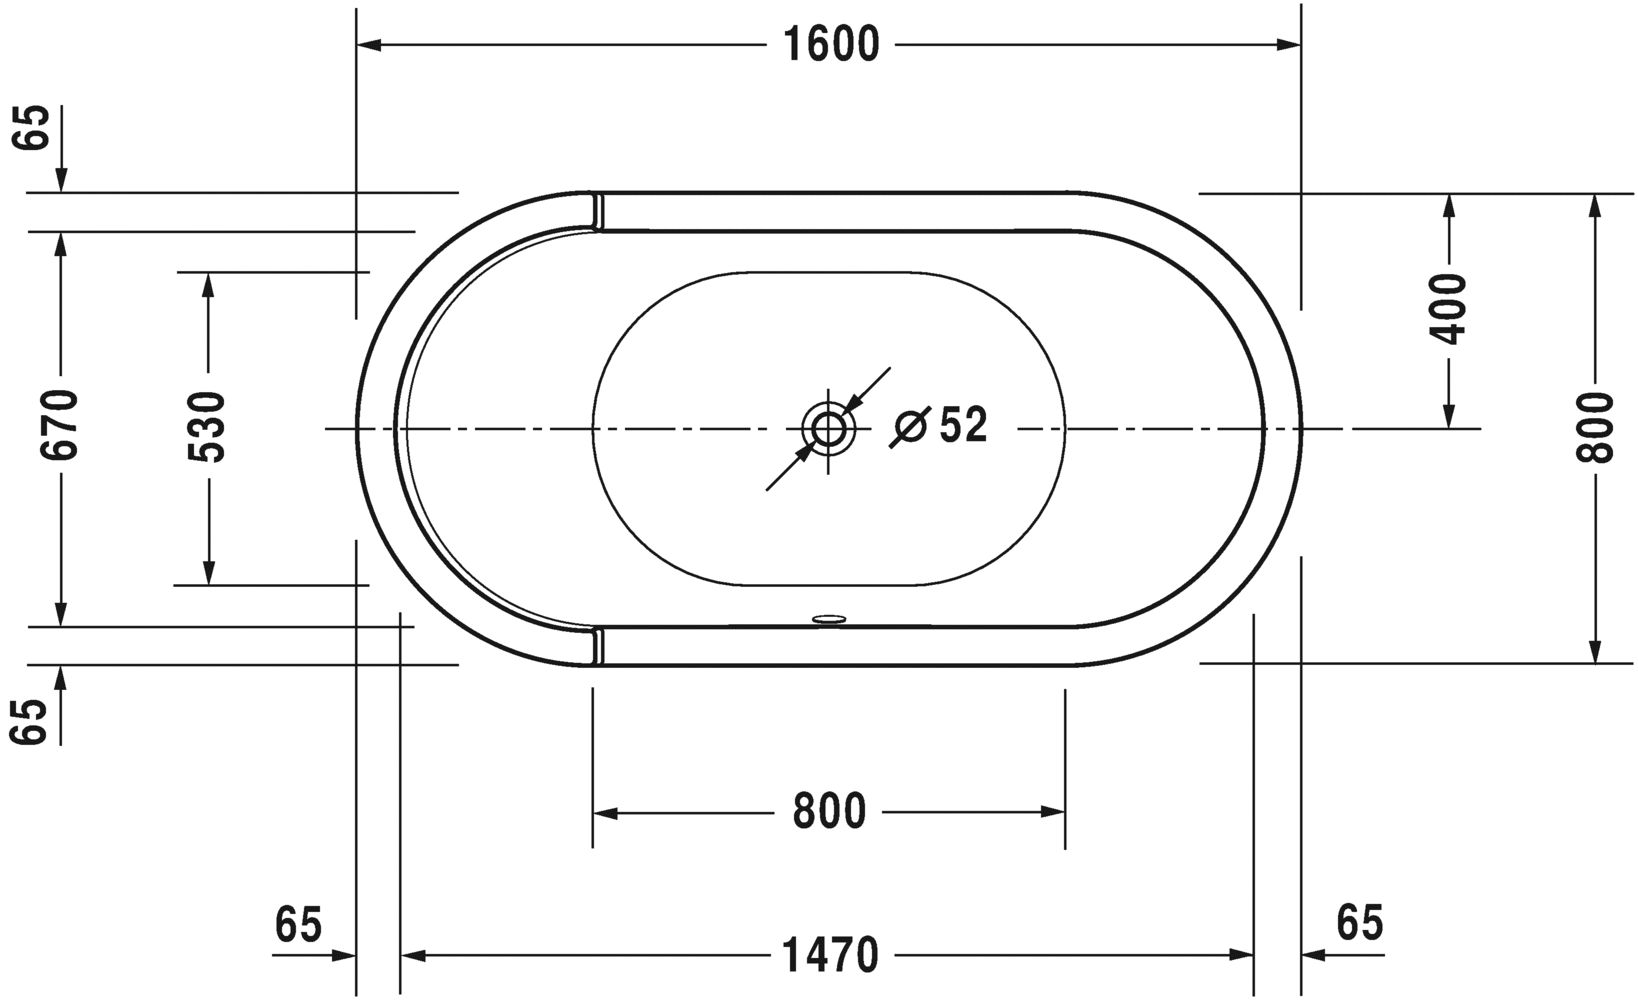 Акриловая ванна Duravit Starck 700409000000000 1600 мм х 800 мм, c двумя наклонами для спины, с акриловой панелью и ножками, отдельно стоящая, белая